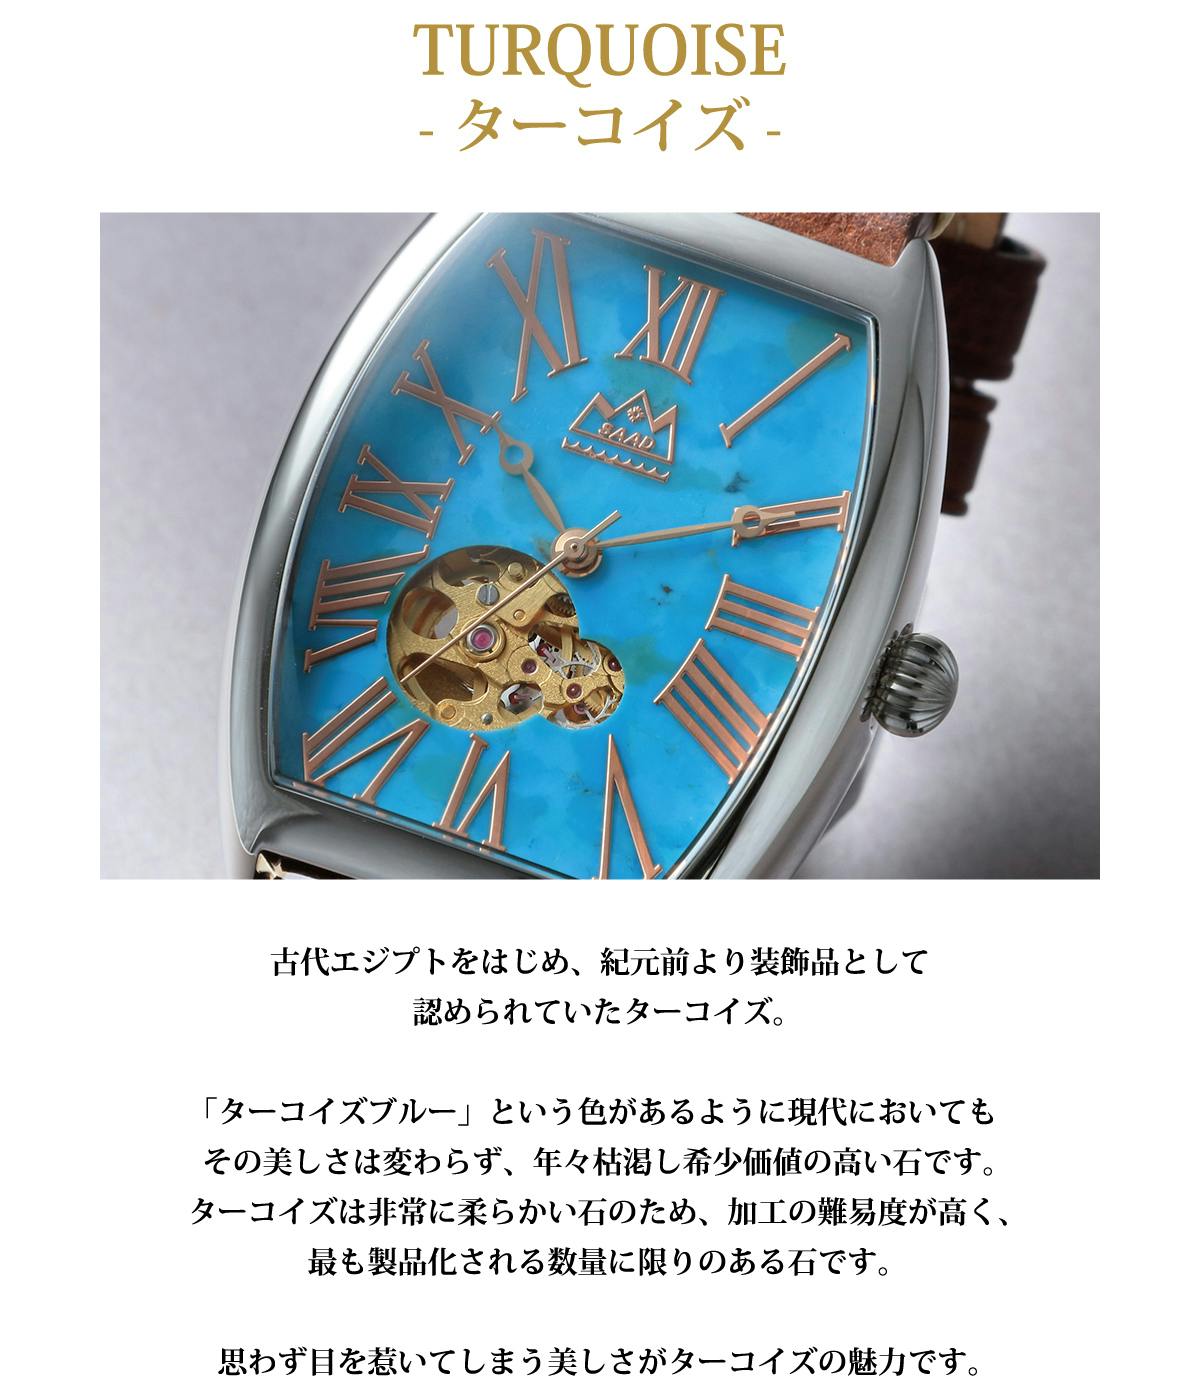 世界に一つだけの美しさ】ジェムストーンが彩る腕時計 -完全数量限定